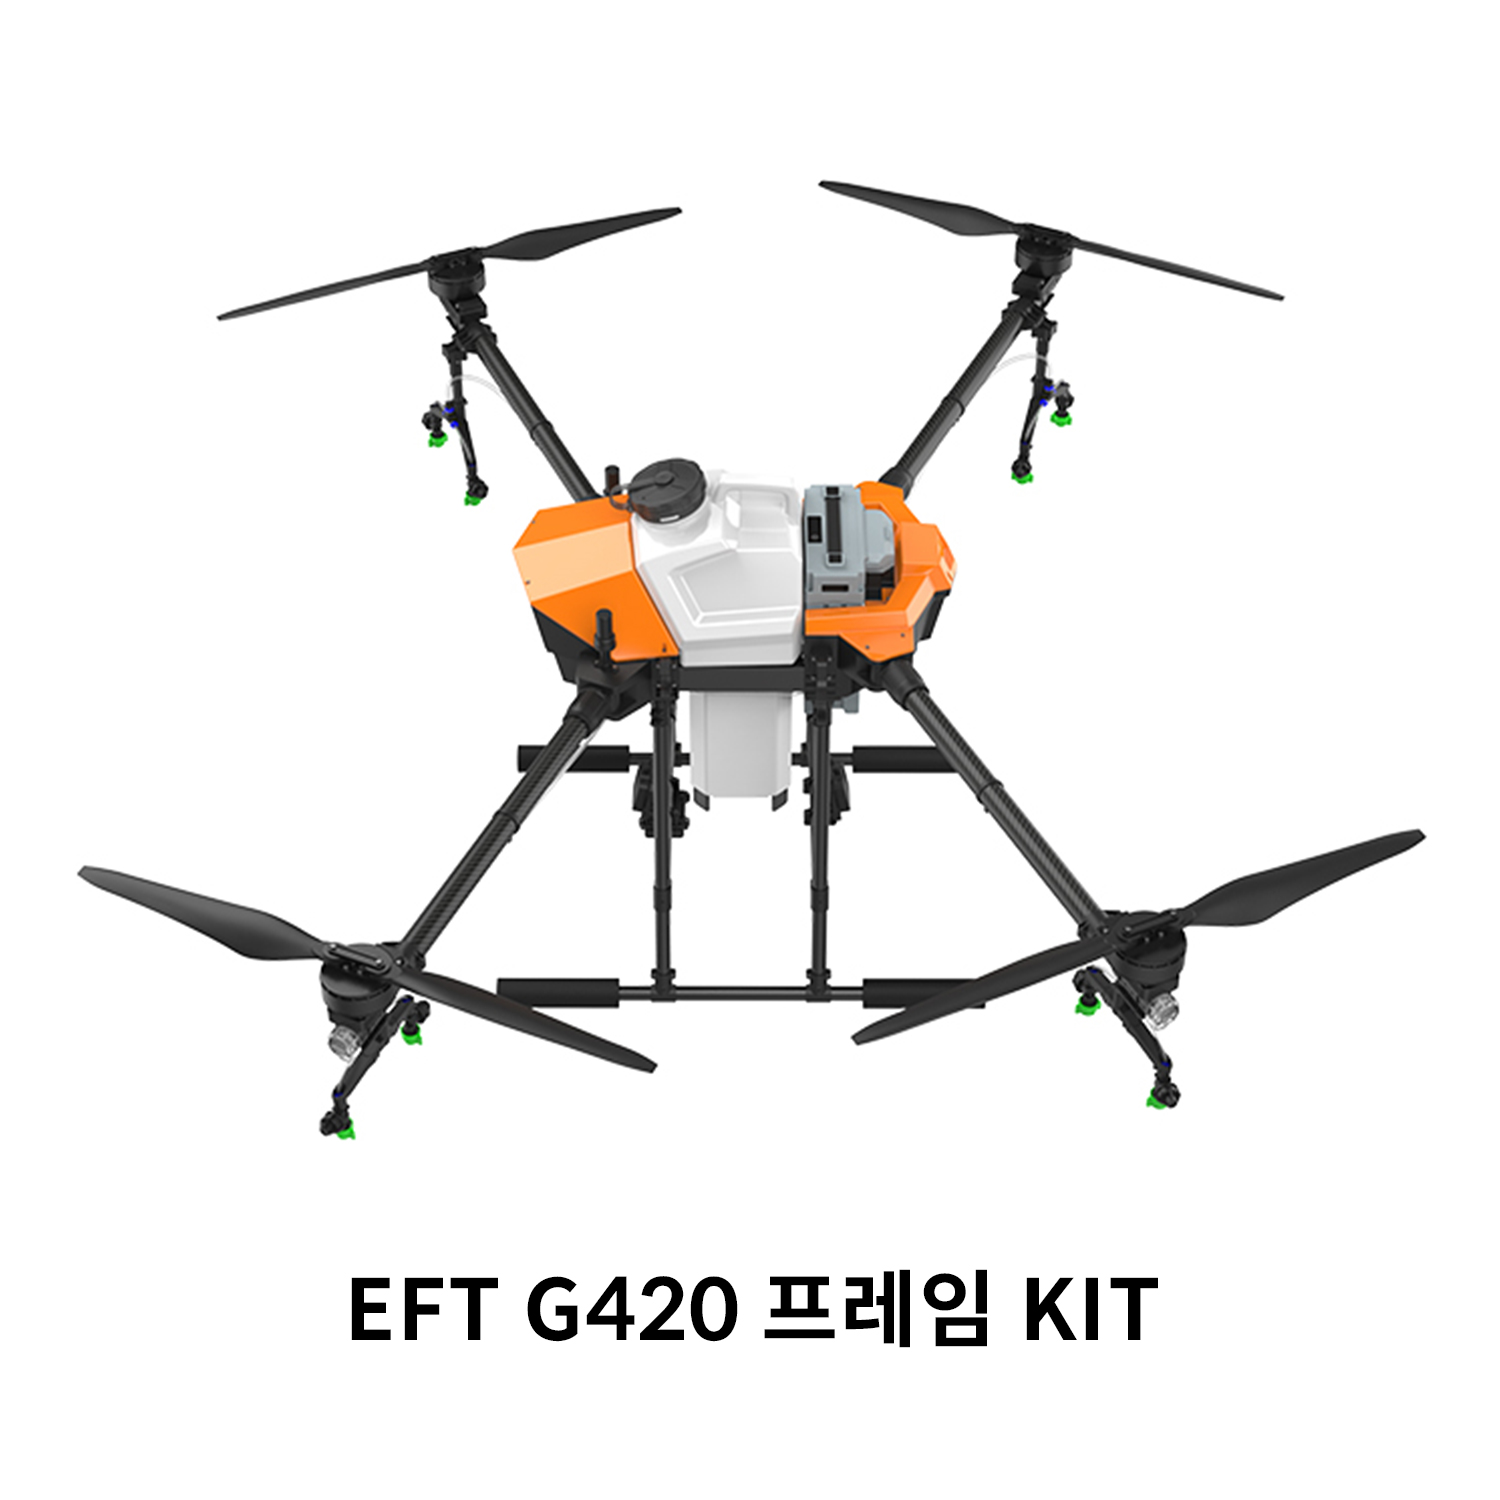 EFT G420 프레임 KIT 농업 방제 드론ㅤ 헬셀